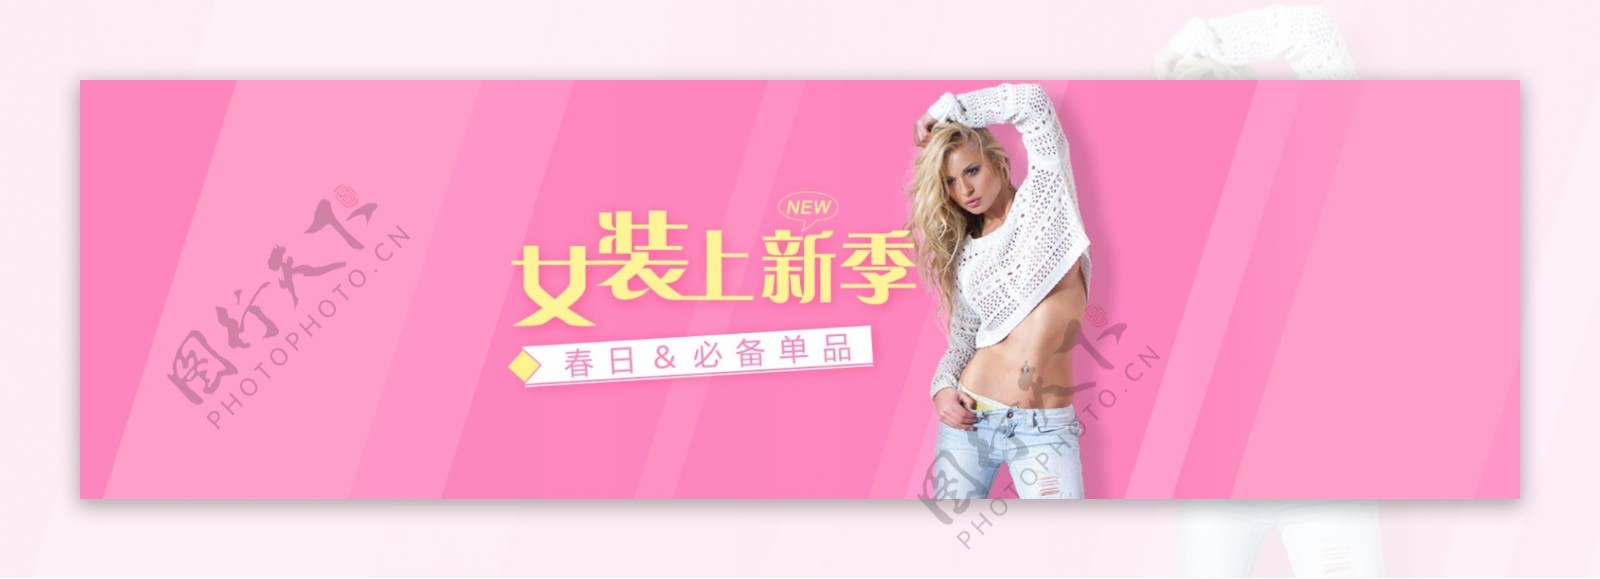 2016女装上新海报banner